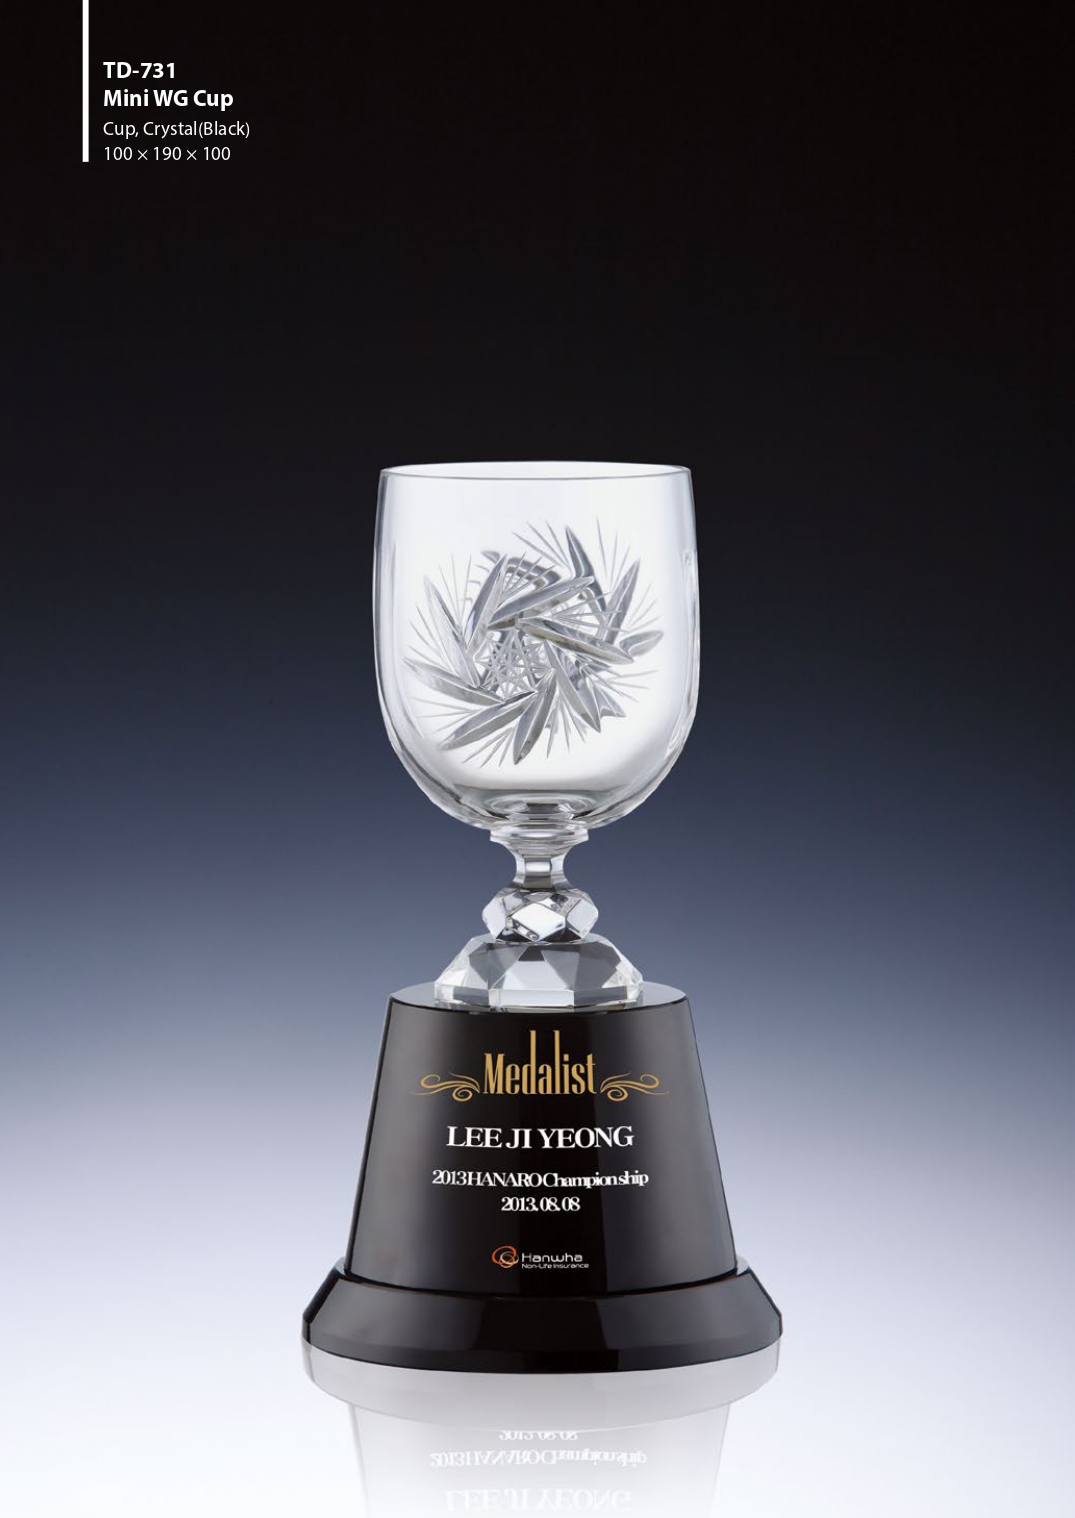 KLPK47077 Mini WG Cup 골프대회 크리스탈컵 상패 트로피 판촉물 제작 케이엘피코리아